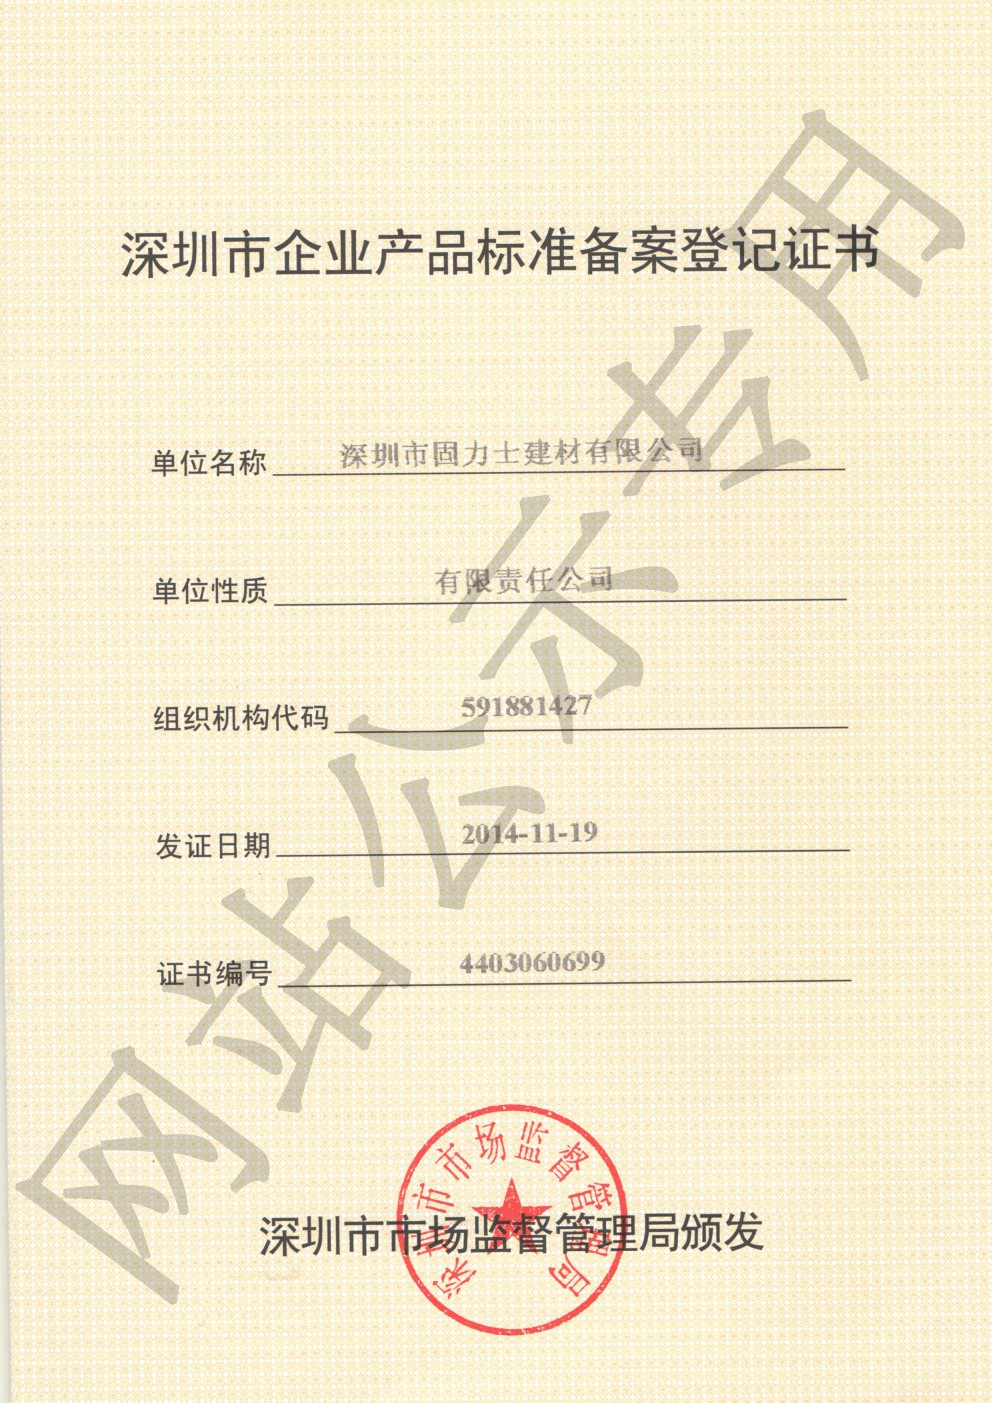 果洛企业产品标准登记证书